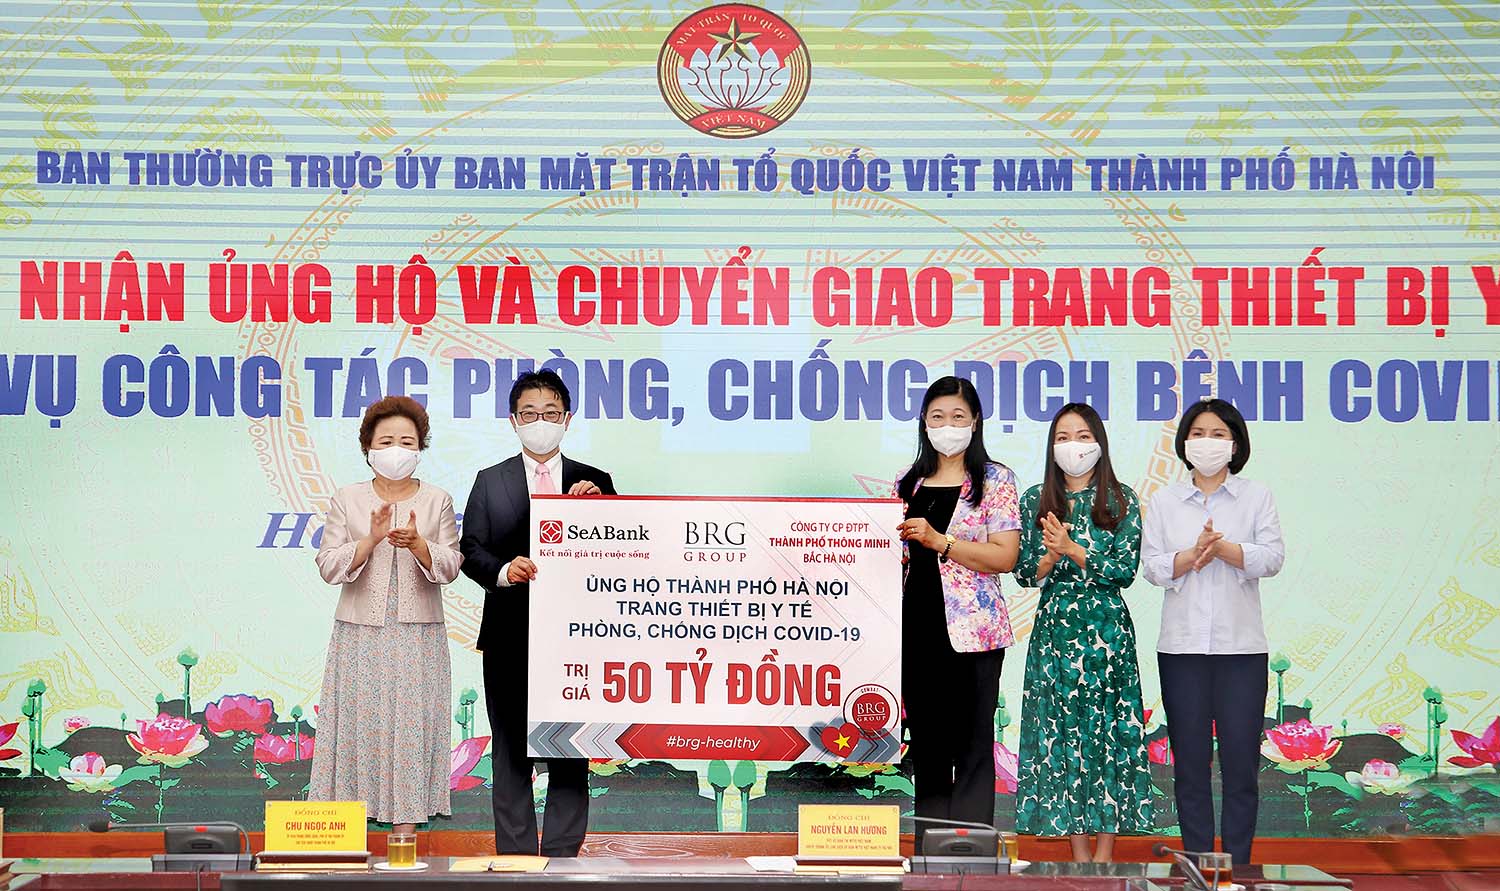 Tập đoàn BRG, ngân hàng SeABank và Công ty Thành phố Thông minh Bắc Hà Nội ủng hộ TP. Hà Nội trang thiết bị y tế phòng, chống dịch Covid-19 trị giá 50 tỷ đồng